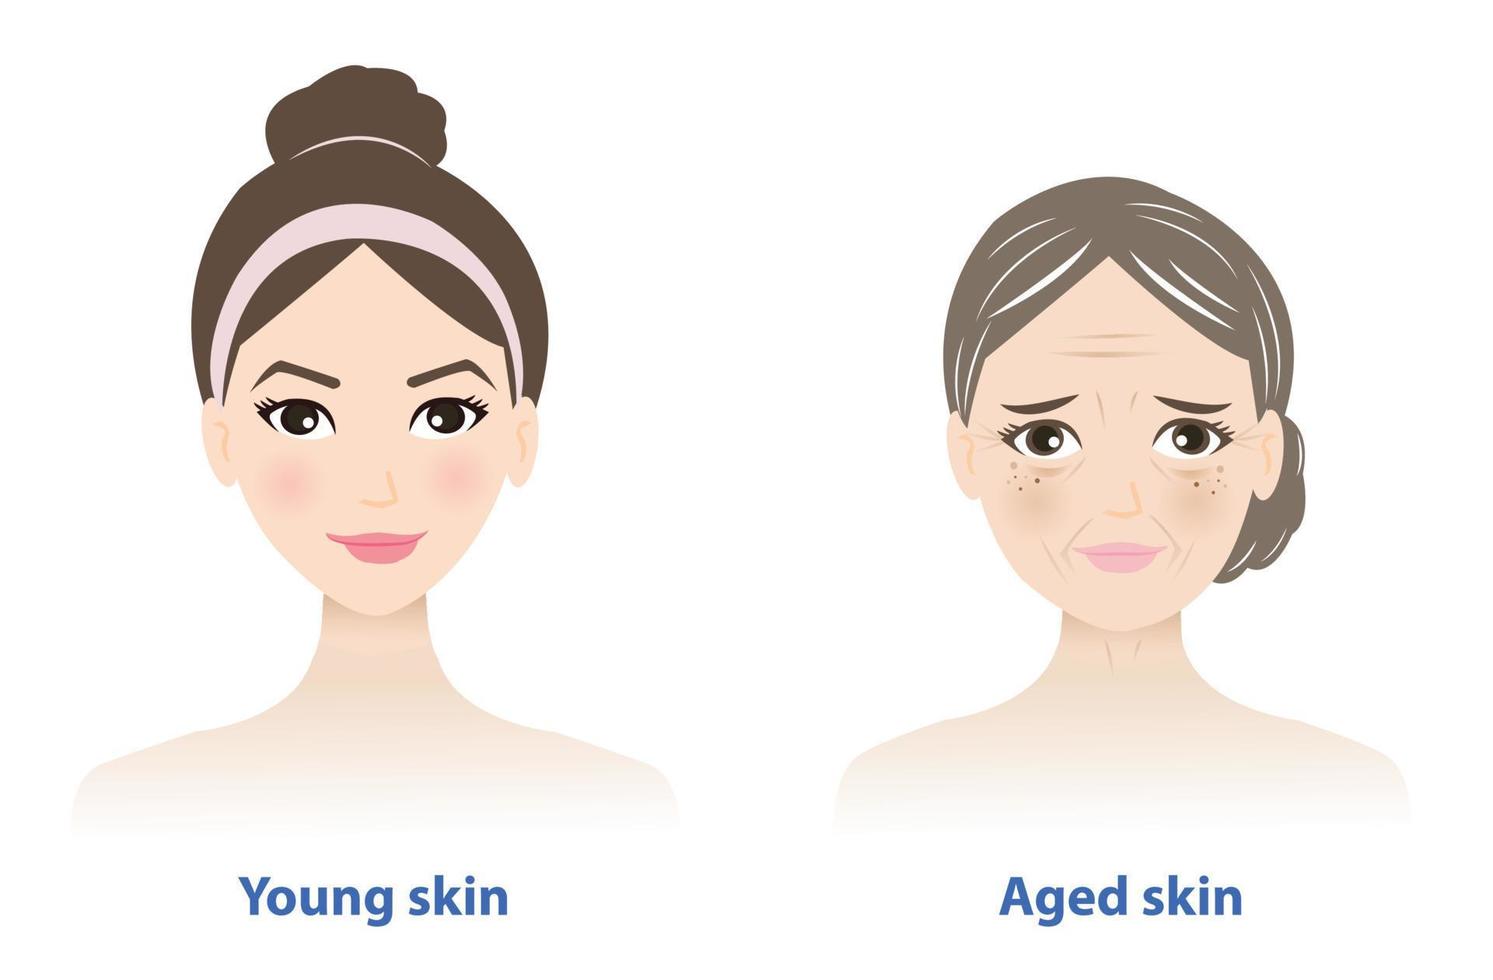 diferencias Entre joven y Envejecido piel. juvenil sano piel mira liso, ajustado, fuerte y normal colágeno contenido. Envejecido piel contiene varios señales de degeneración. piel cuidado y belleza concepto. vector